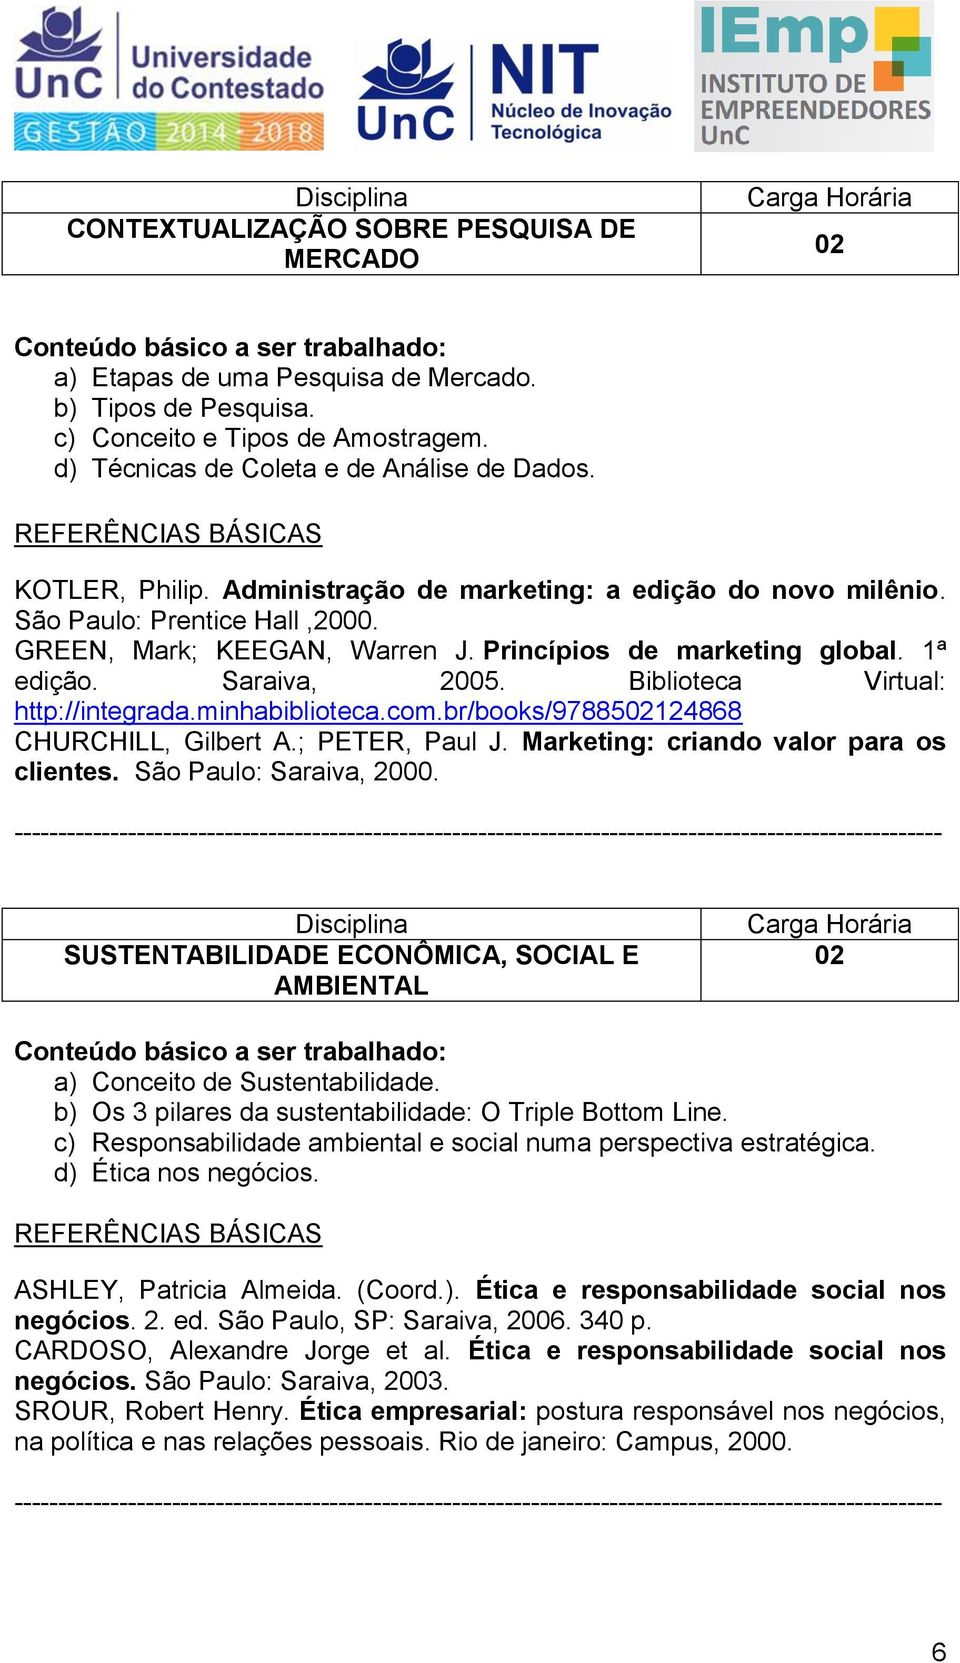 Biblioteca Virtual: http://integrada.minhabiblioteca.com.br/books/9788502124868 CHURCHILL, Gilbert A.; PETER, Paul J. Marketing: criando valor para os clientes. São Paulo: Saraiva, 2000.